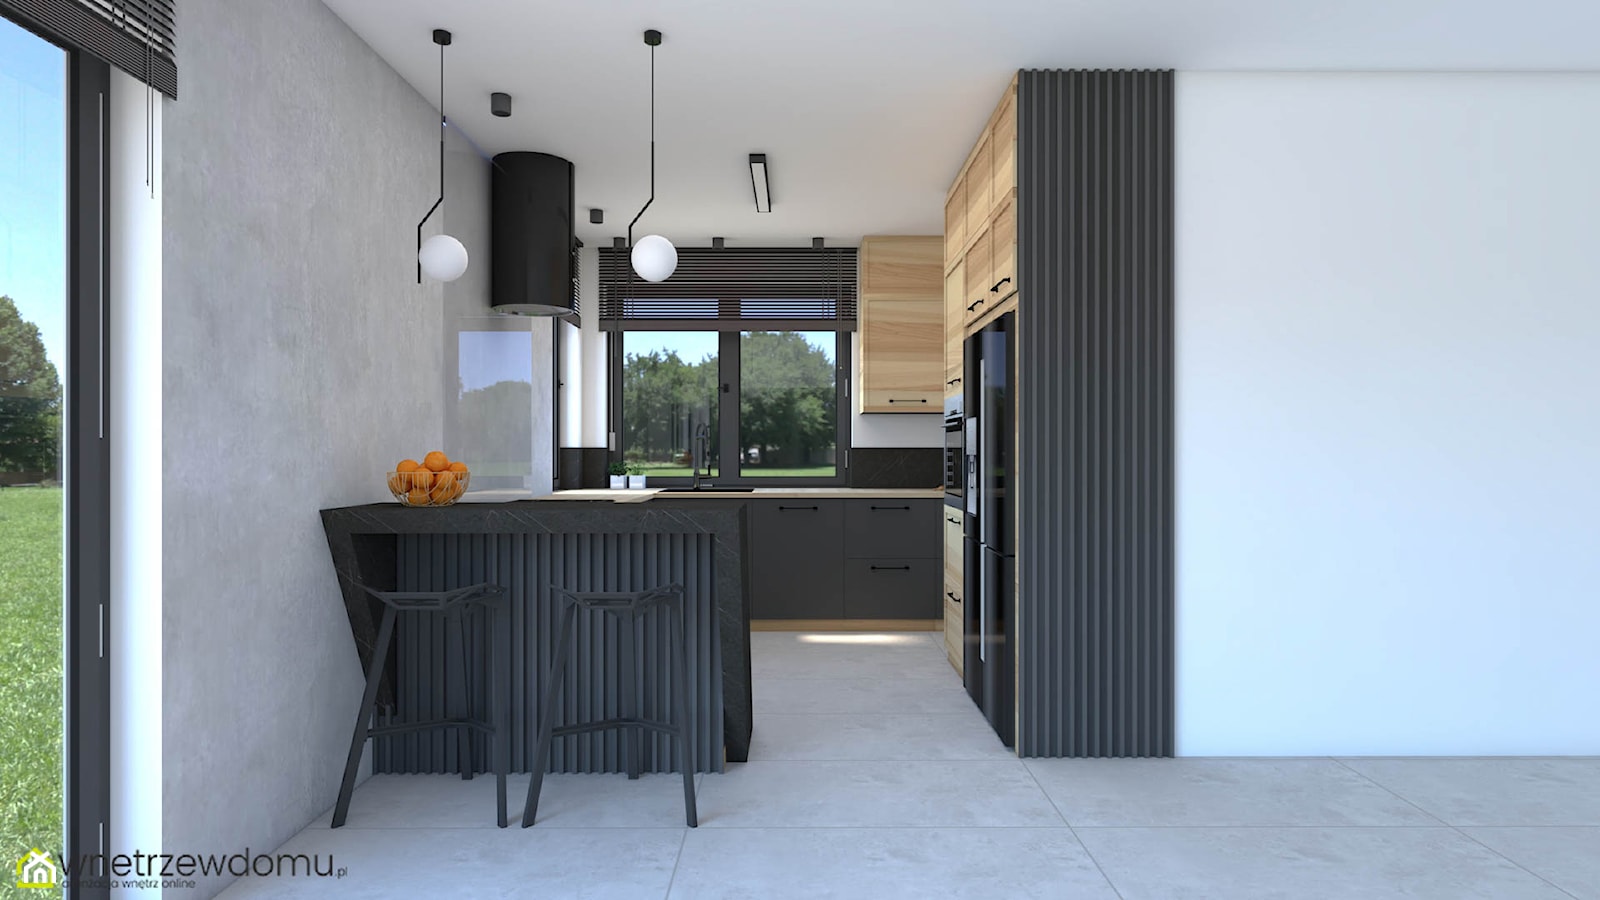 Elegancka ciemna kuchnia połączenie -połączenie cerni, drewna i betonu - zdjęcie od wnetrzewdomu - Homebook